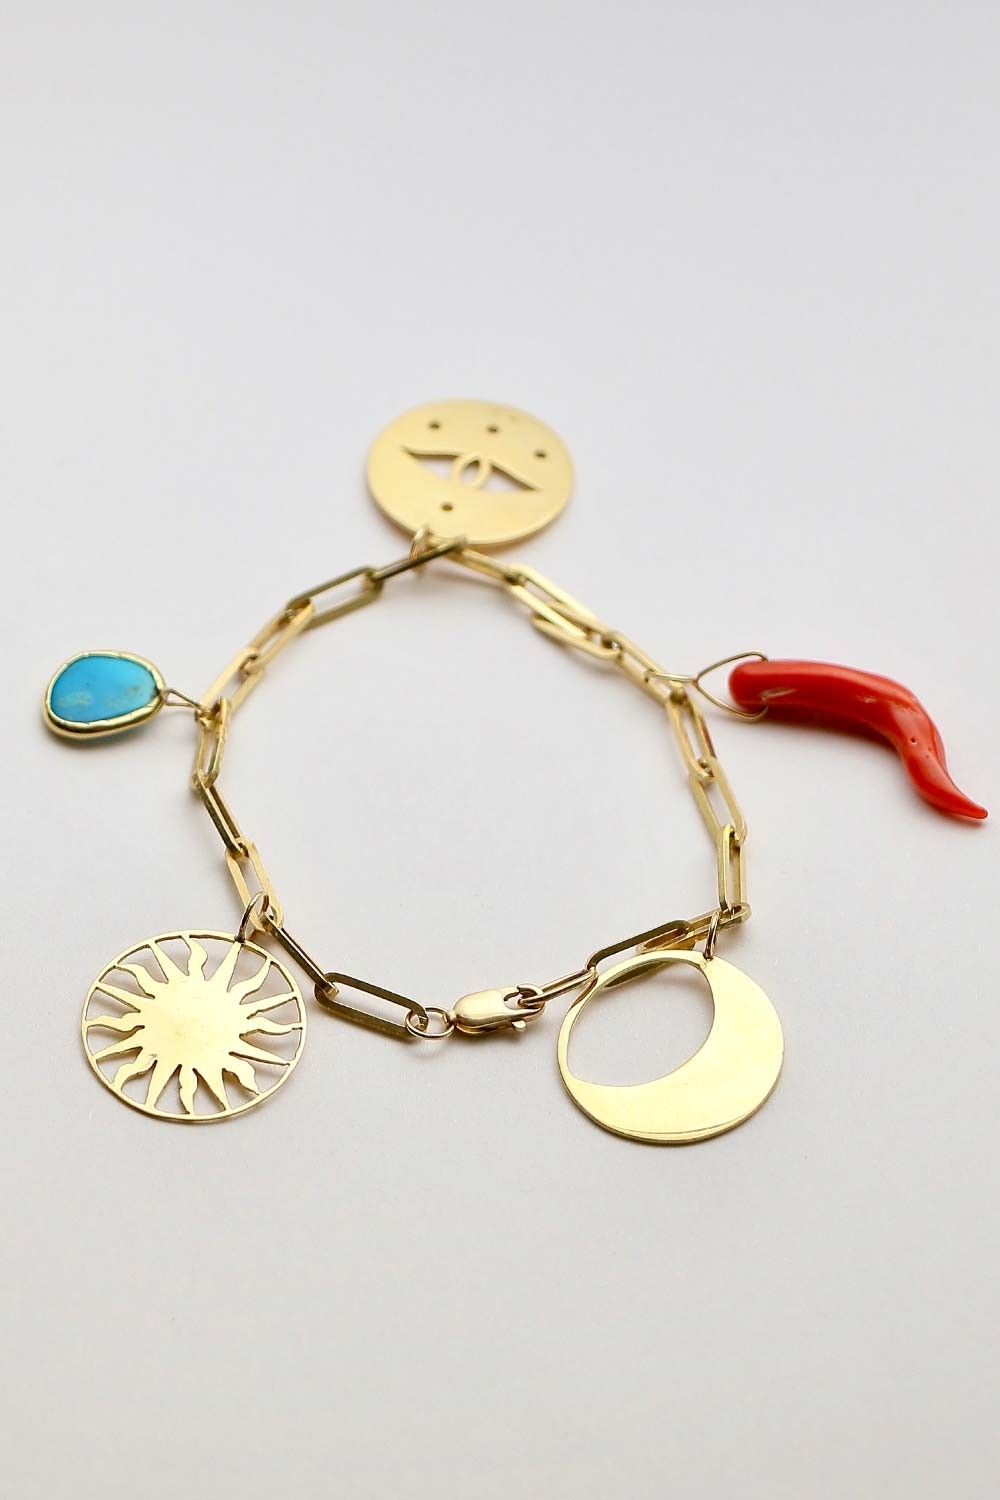 Lucky bracelet by Gazzaladra